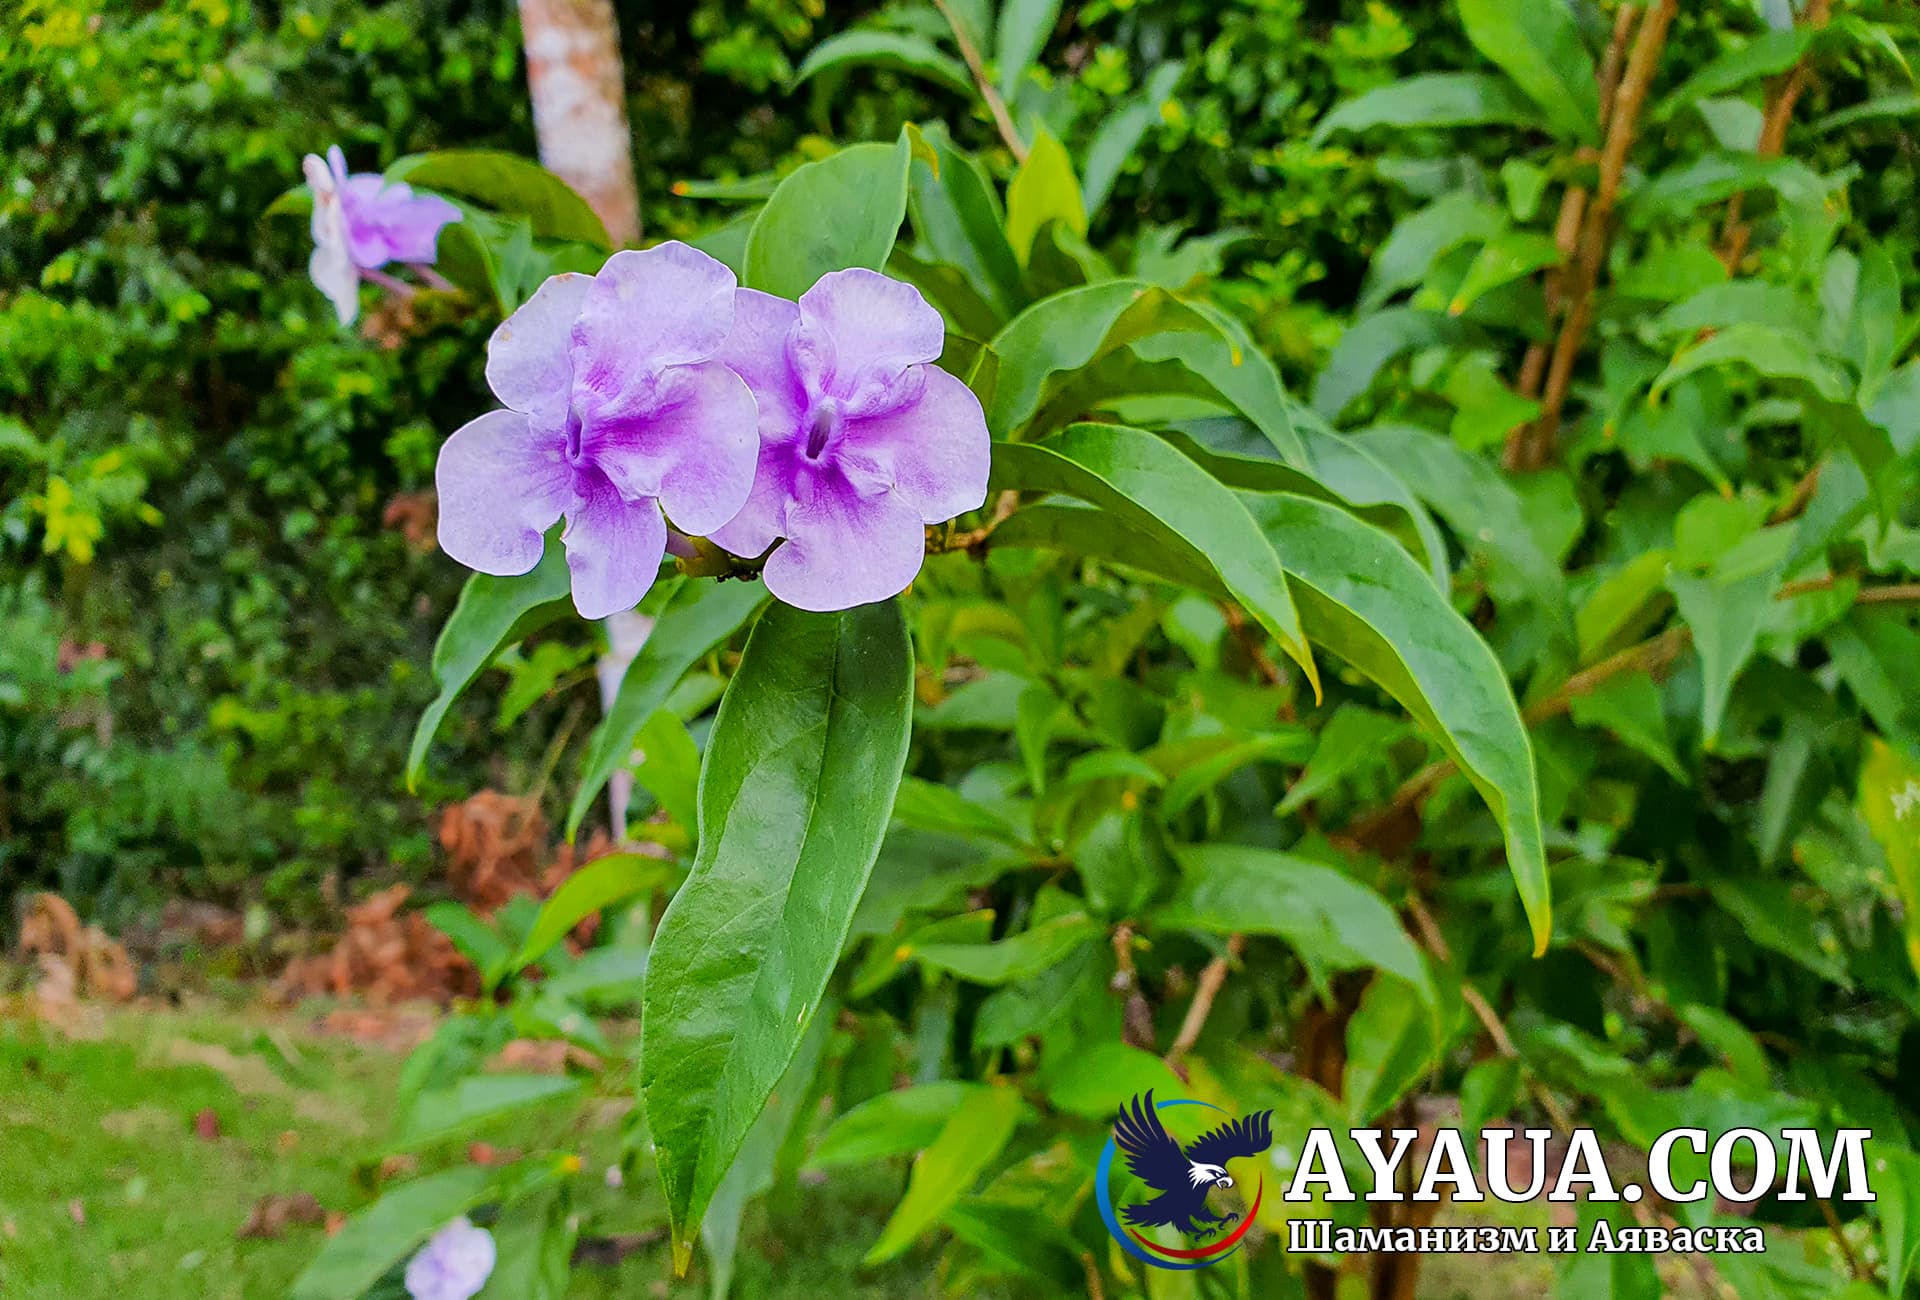 Чирик Сананго - амазонское растение, которое эффективно лечит нервную систему и имеет много других полезных свойств.